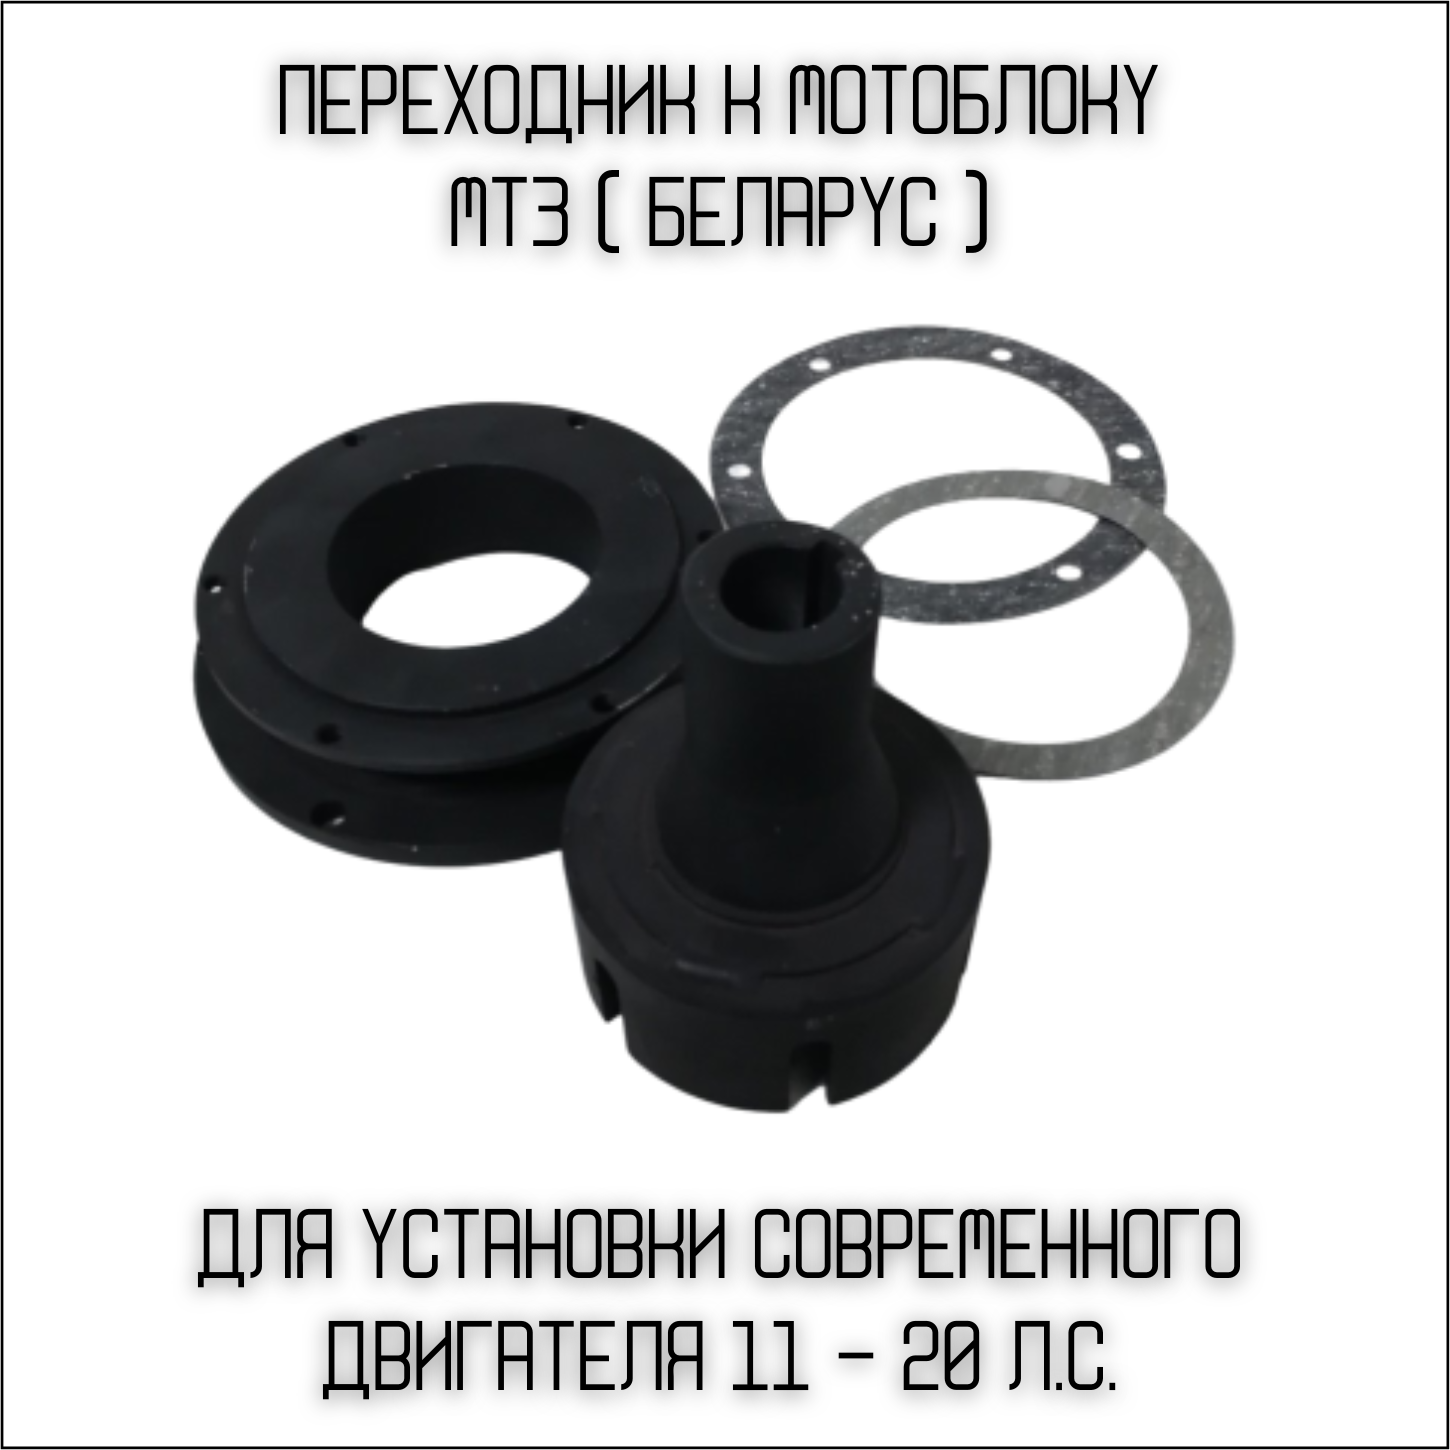 Переходник к мотоблоку МТЗ-05, 06, 012 (Беларус) для установки современного двигателя (11 - 20 лс.)